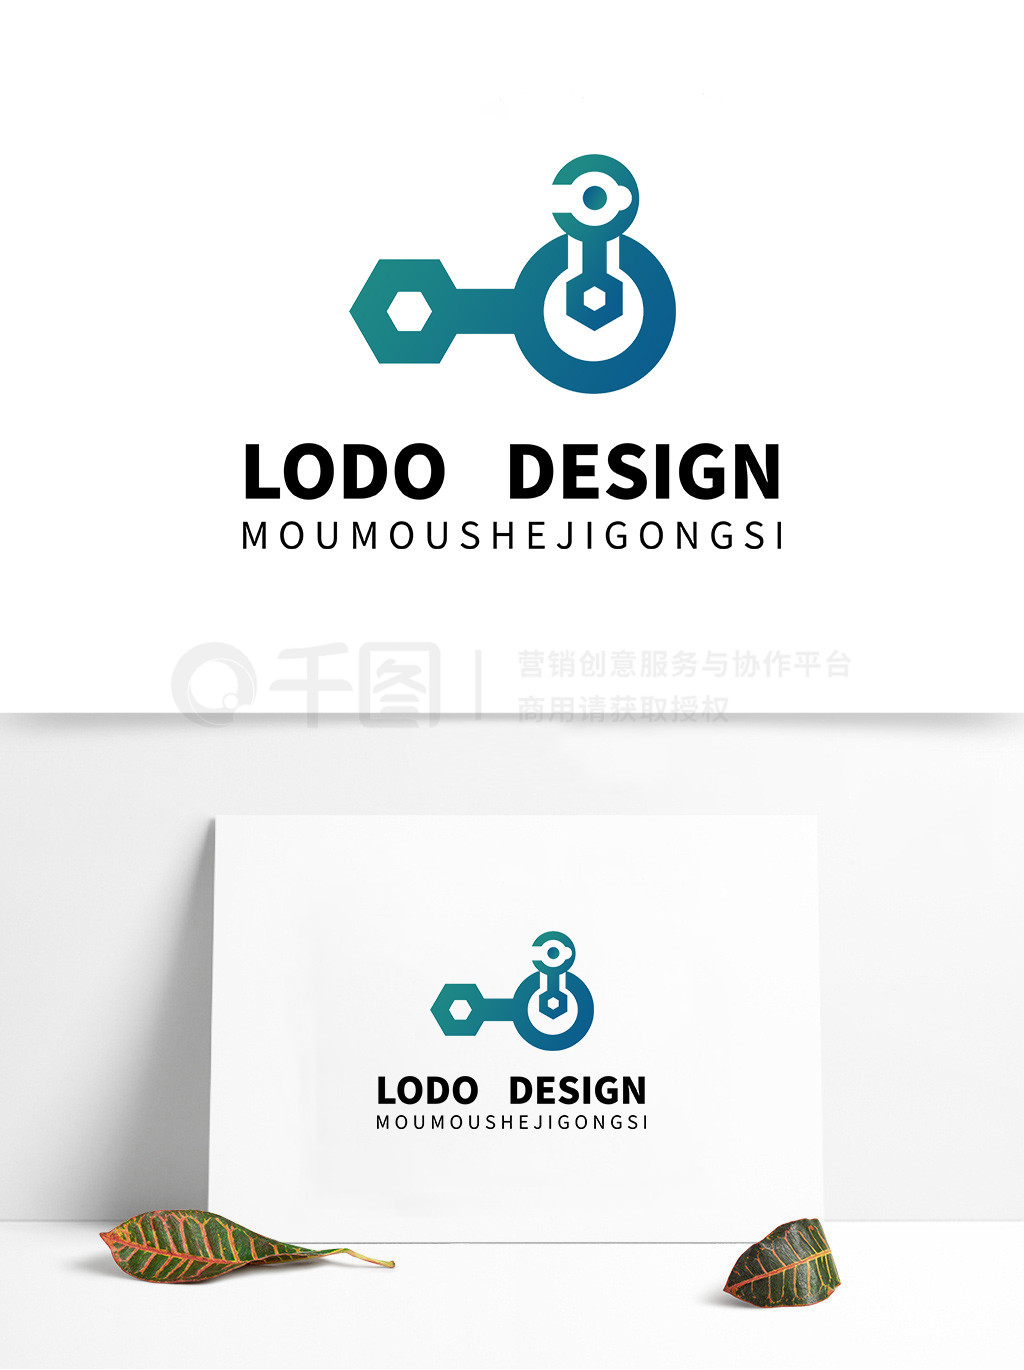 原创手绘开锁公司LOGO标识宣传设计